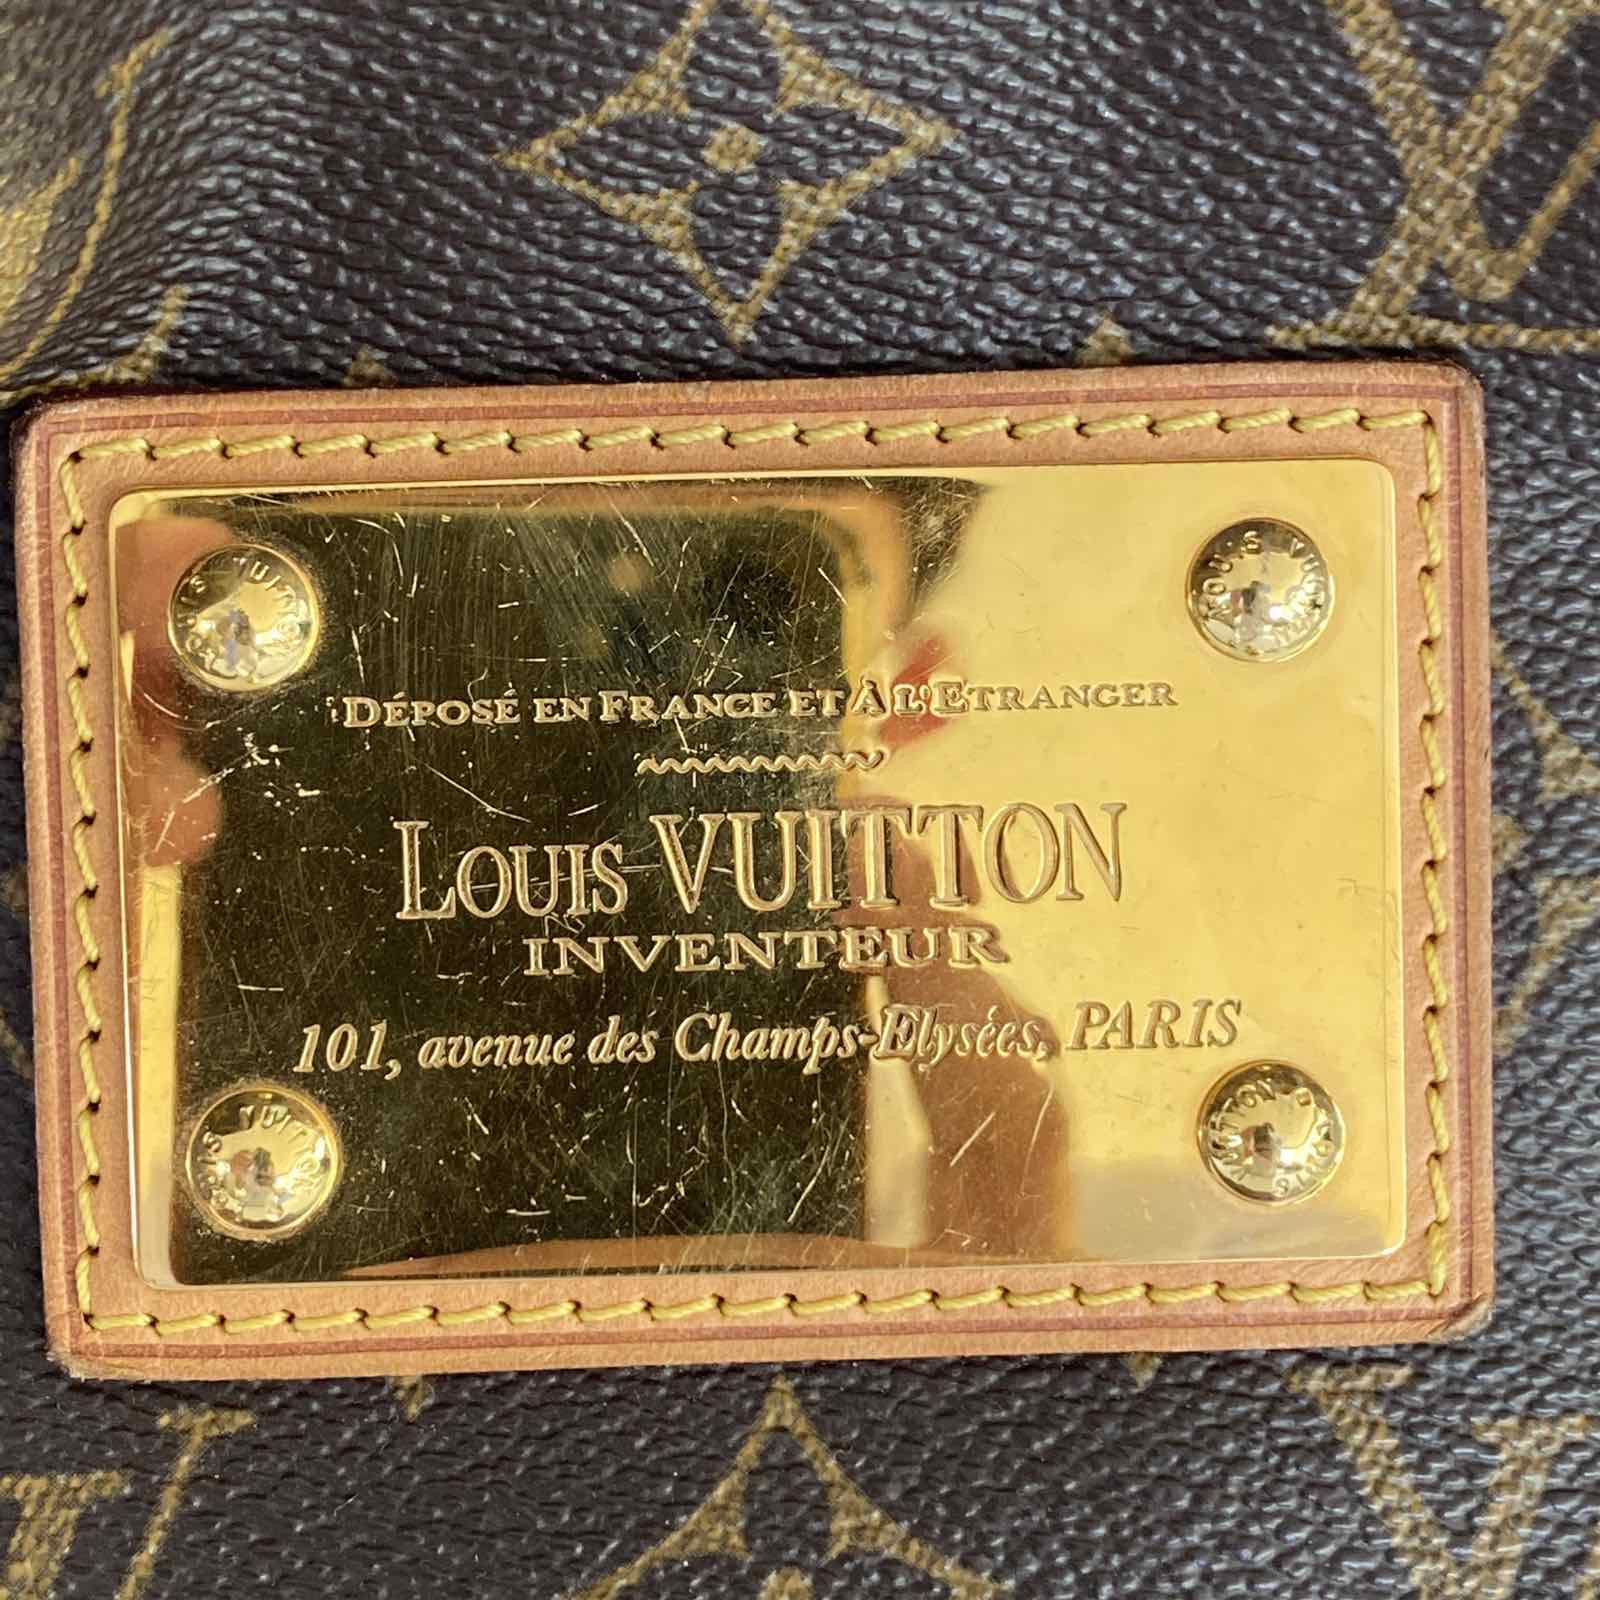 Louis Vuitton Inventeur 101, avenue des Champs Elysees, PARIS